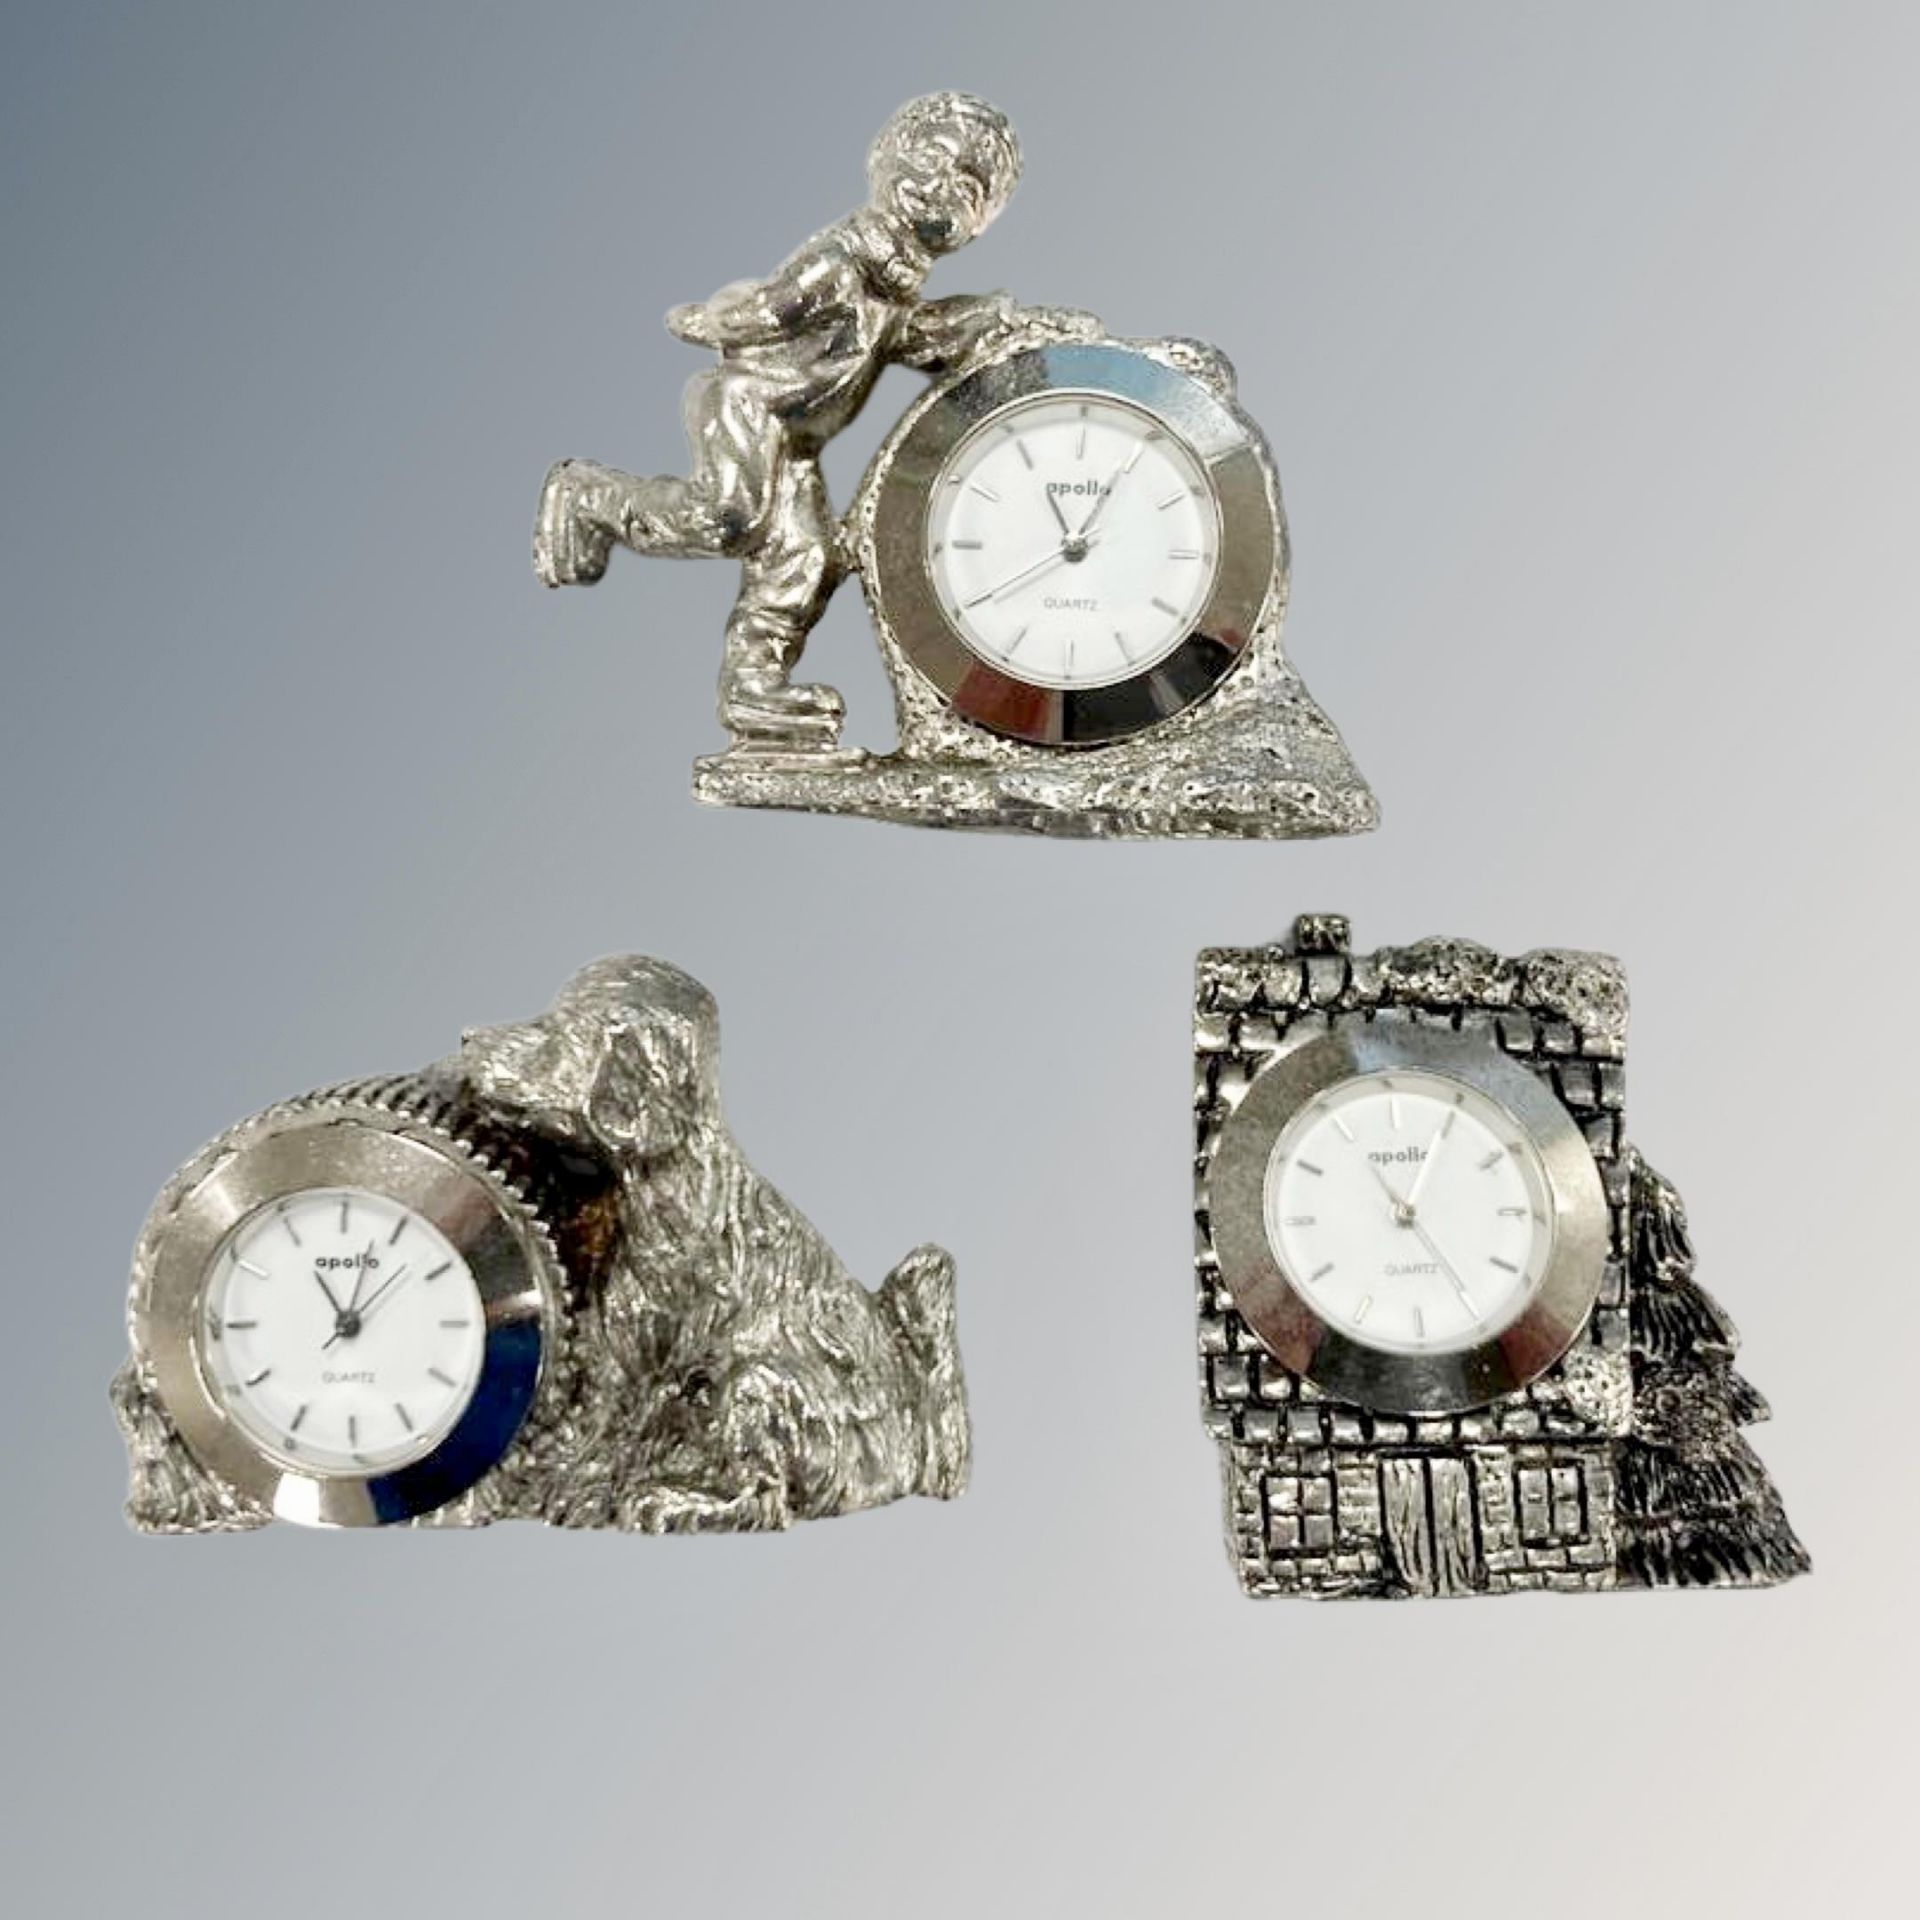 Three miniature clocks